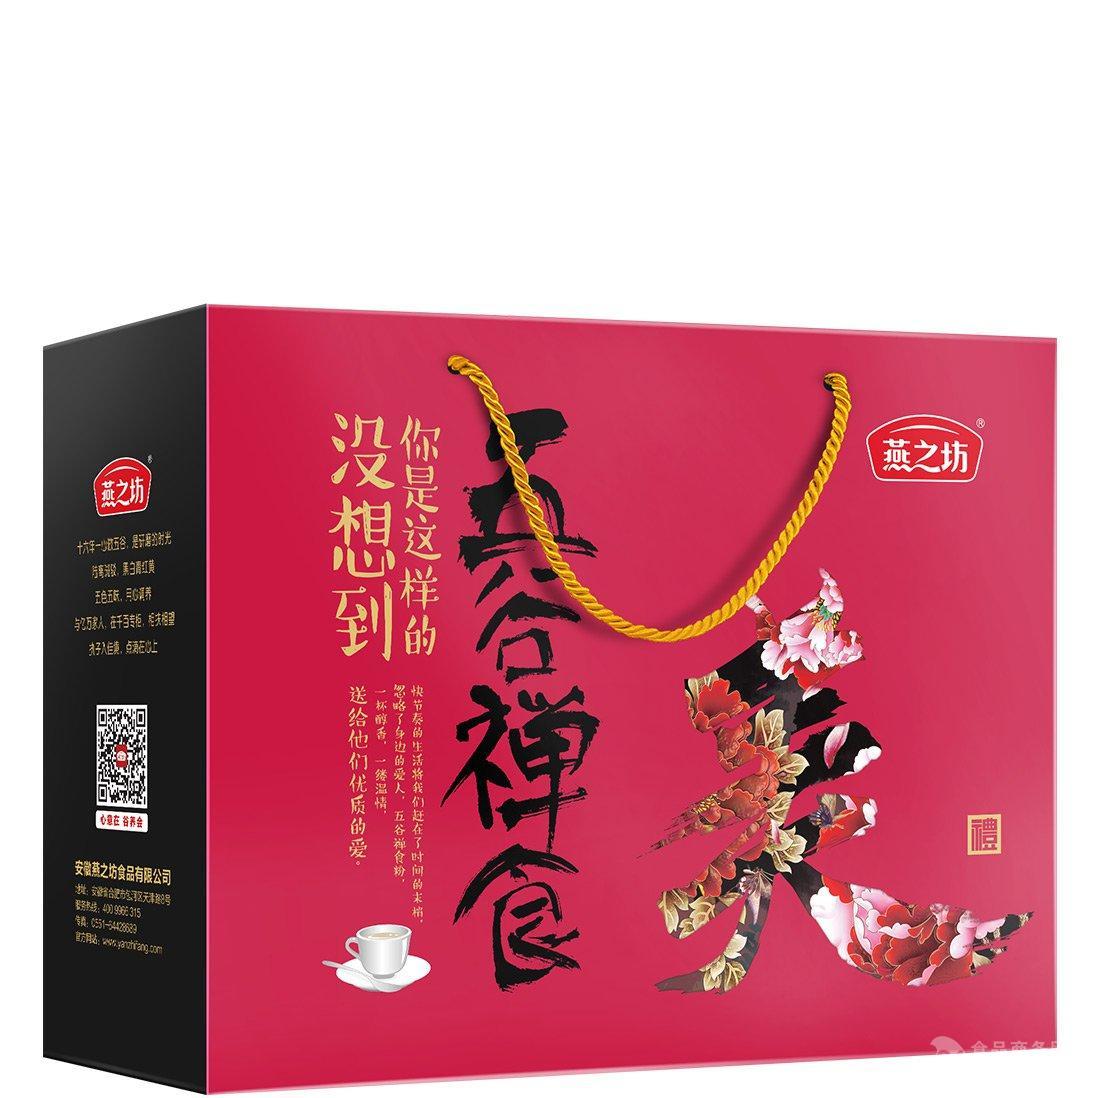 燕之坊 五谷禅食粉美礼礼盒 1.25kg